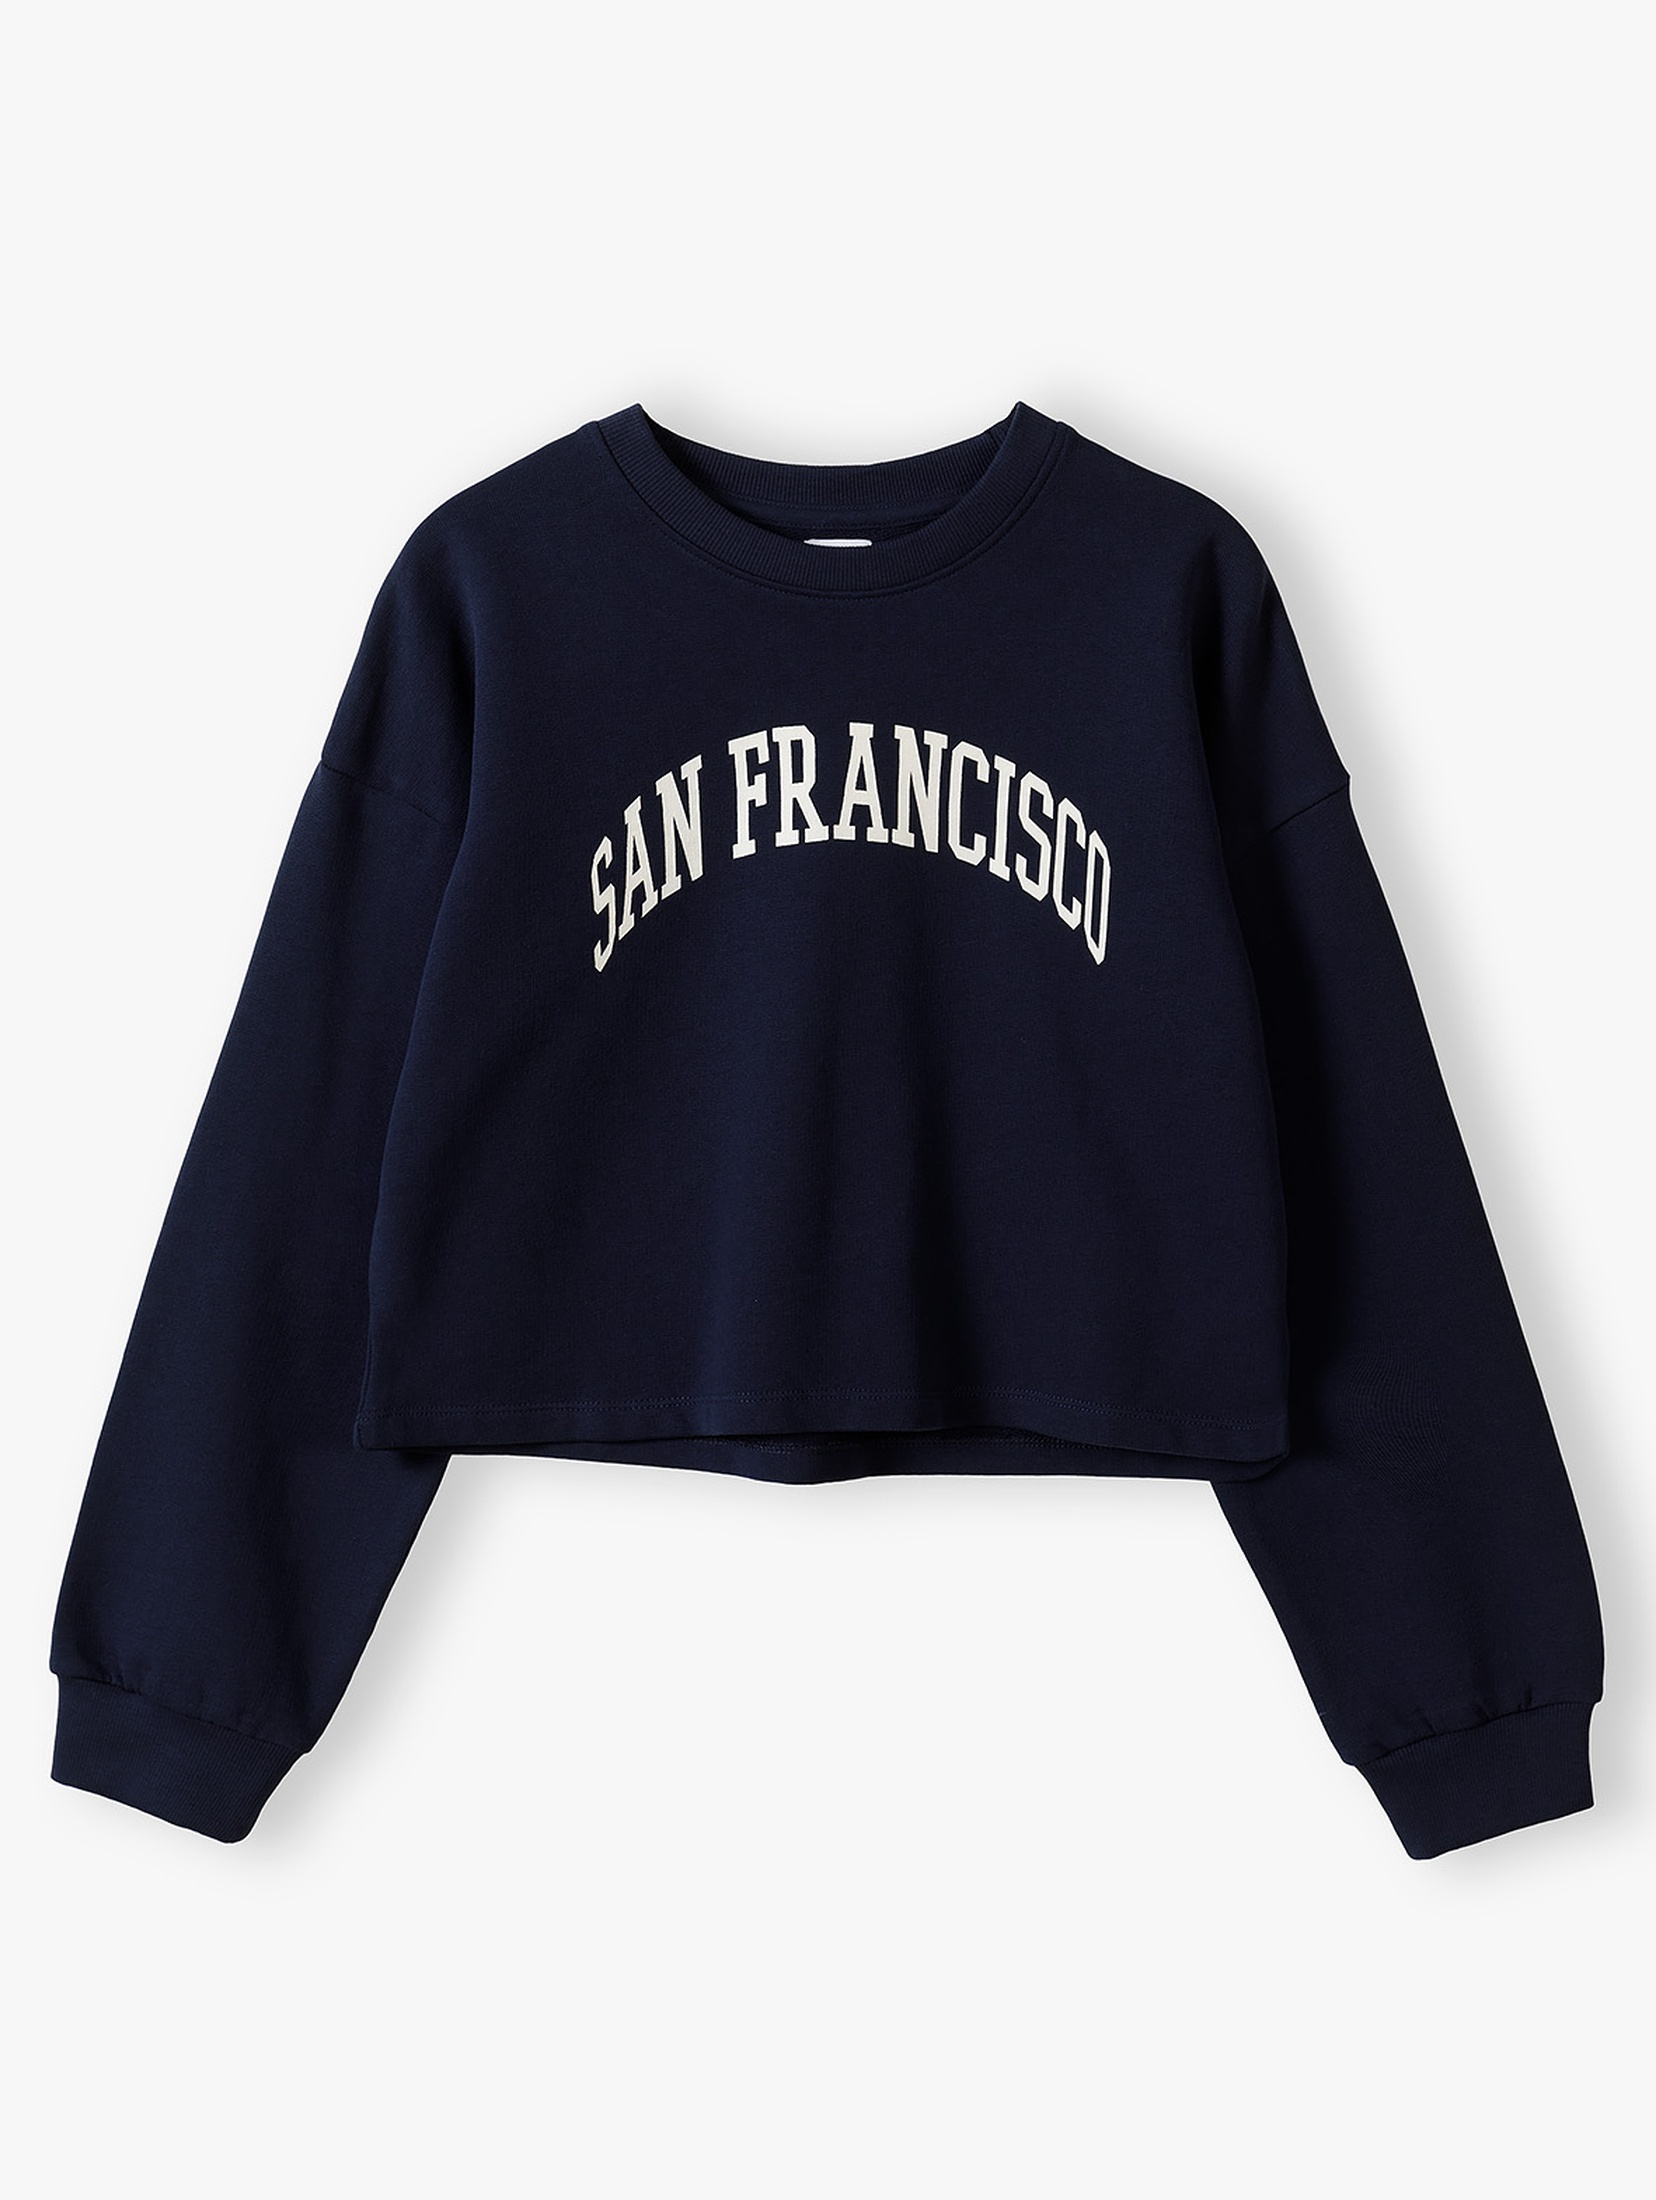 Komplet dresowy- bluza i spodnie dresowe - San Francisco - Limited Edition